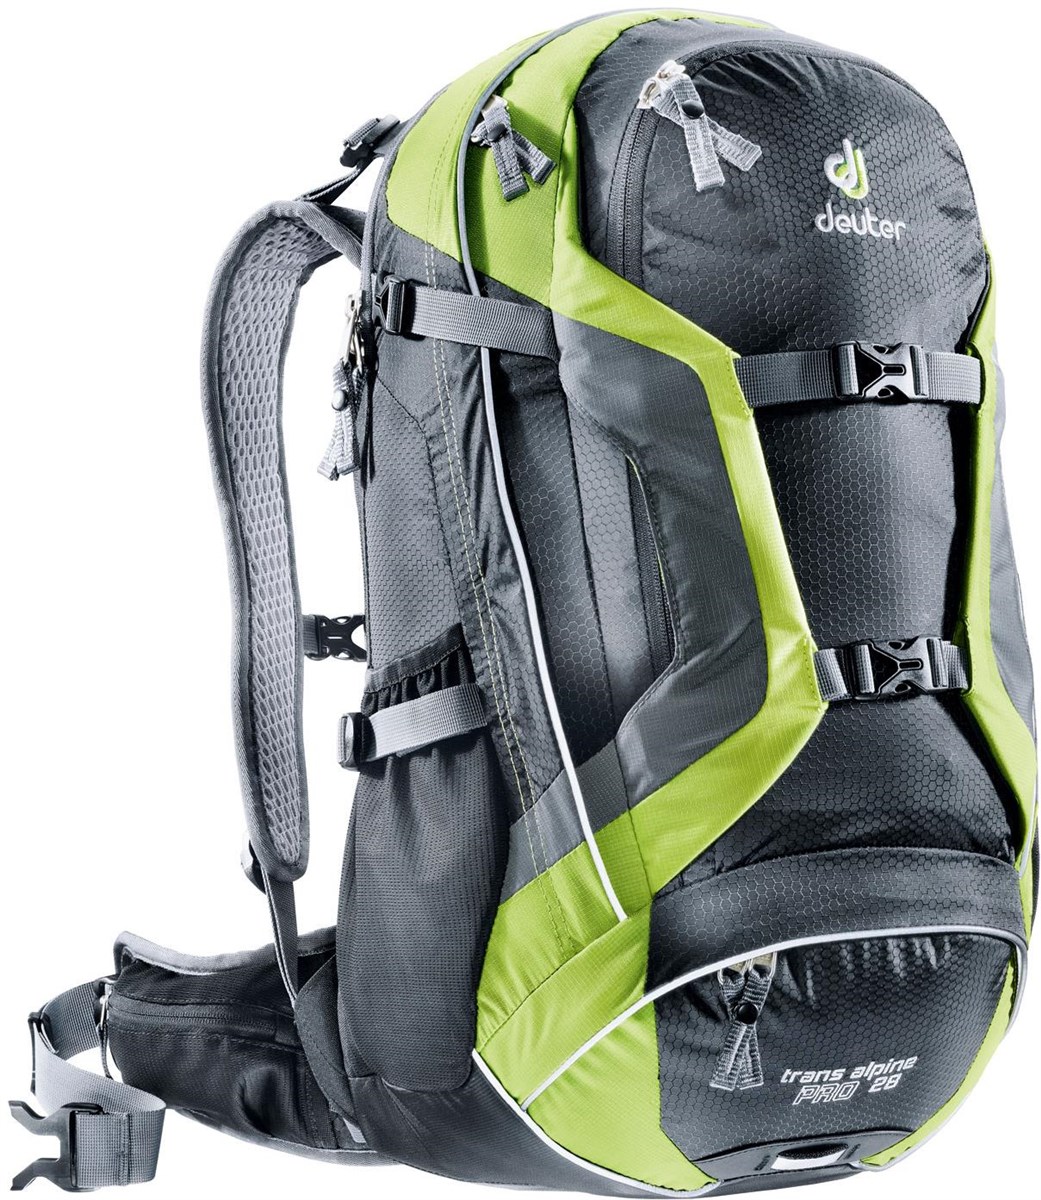 Deuter Trans Alpine Pro 28 Bag / Backpack product image